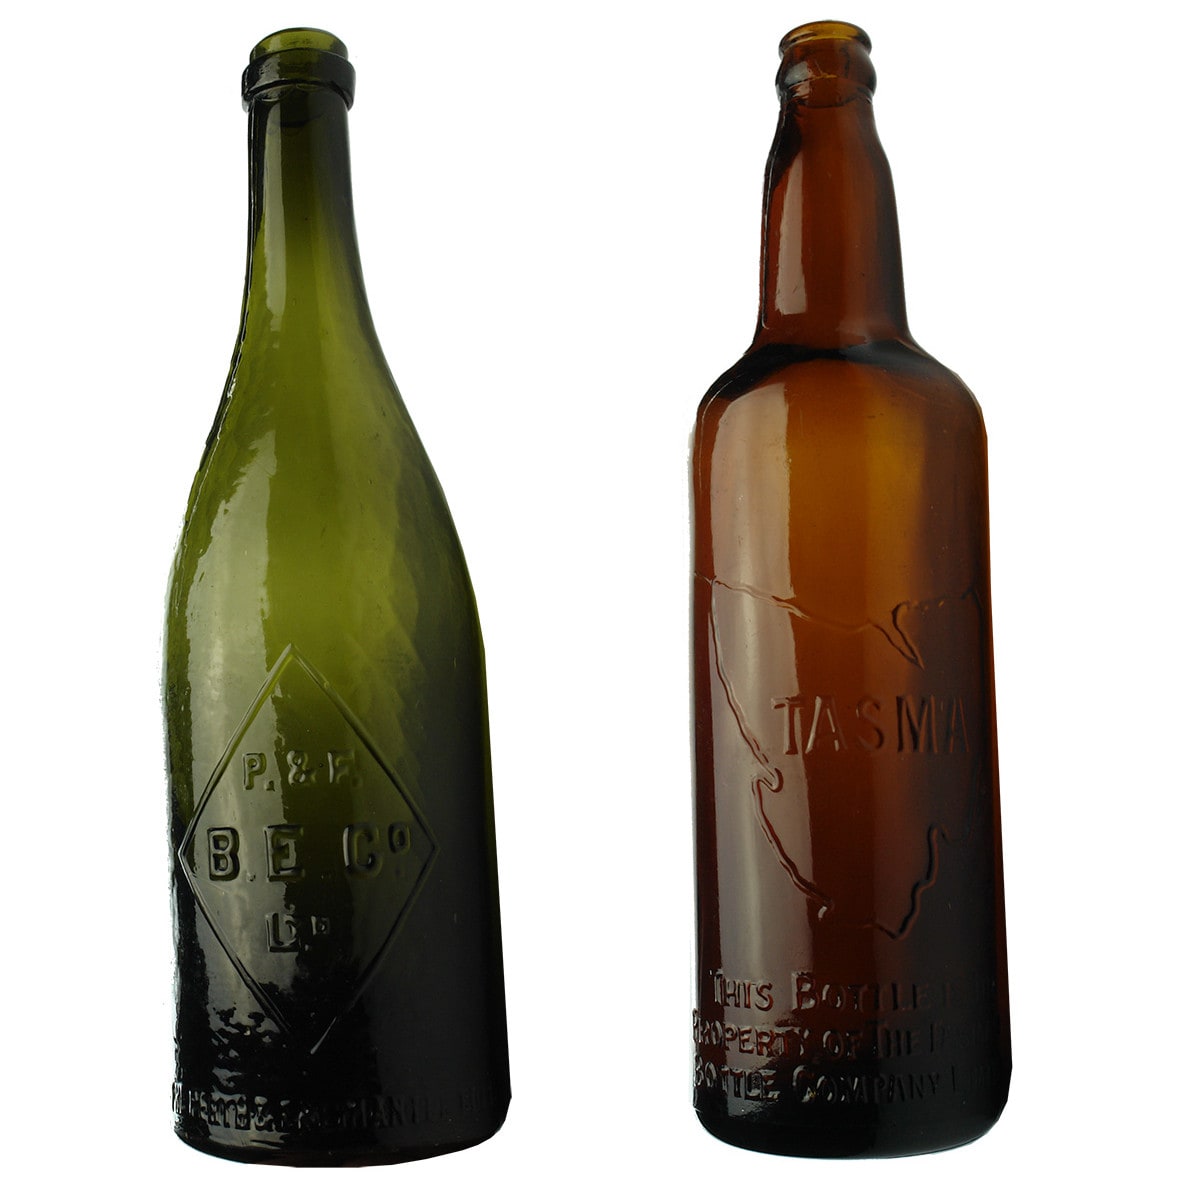 Pair of Beers: Perth & Fremantle Bottle Exchange and Tasmanian Bottle Company. (Western Australia & Tasmania)